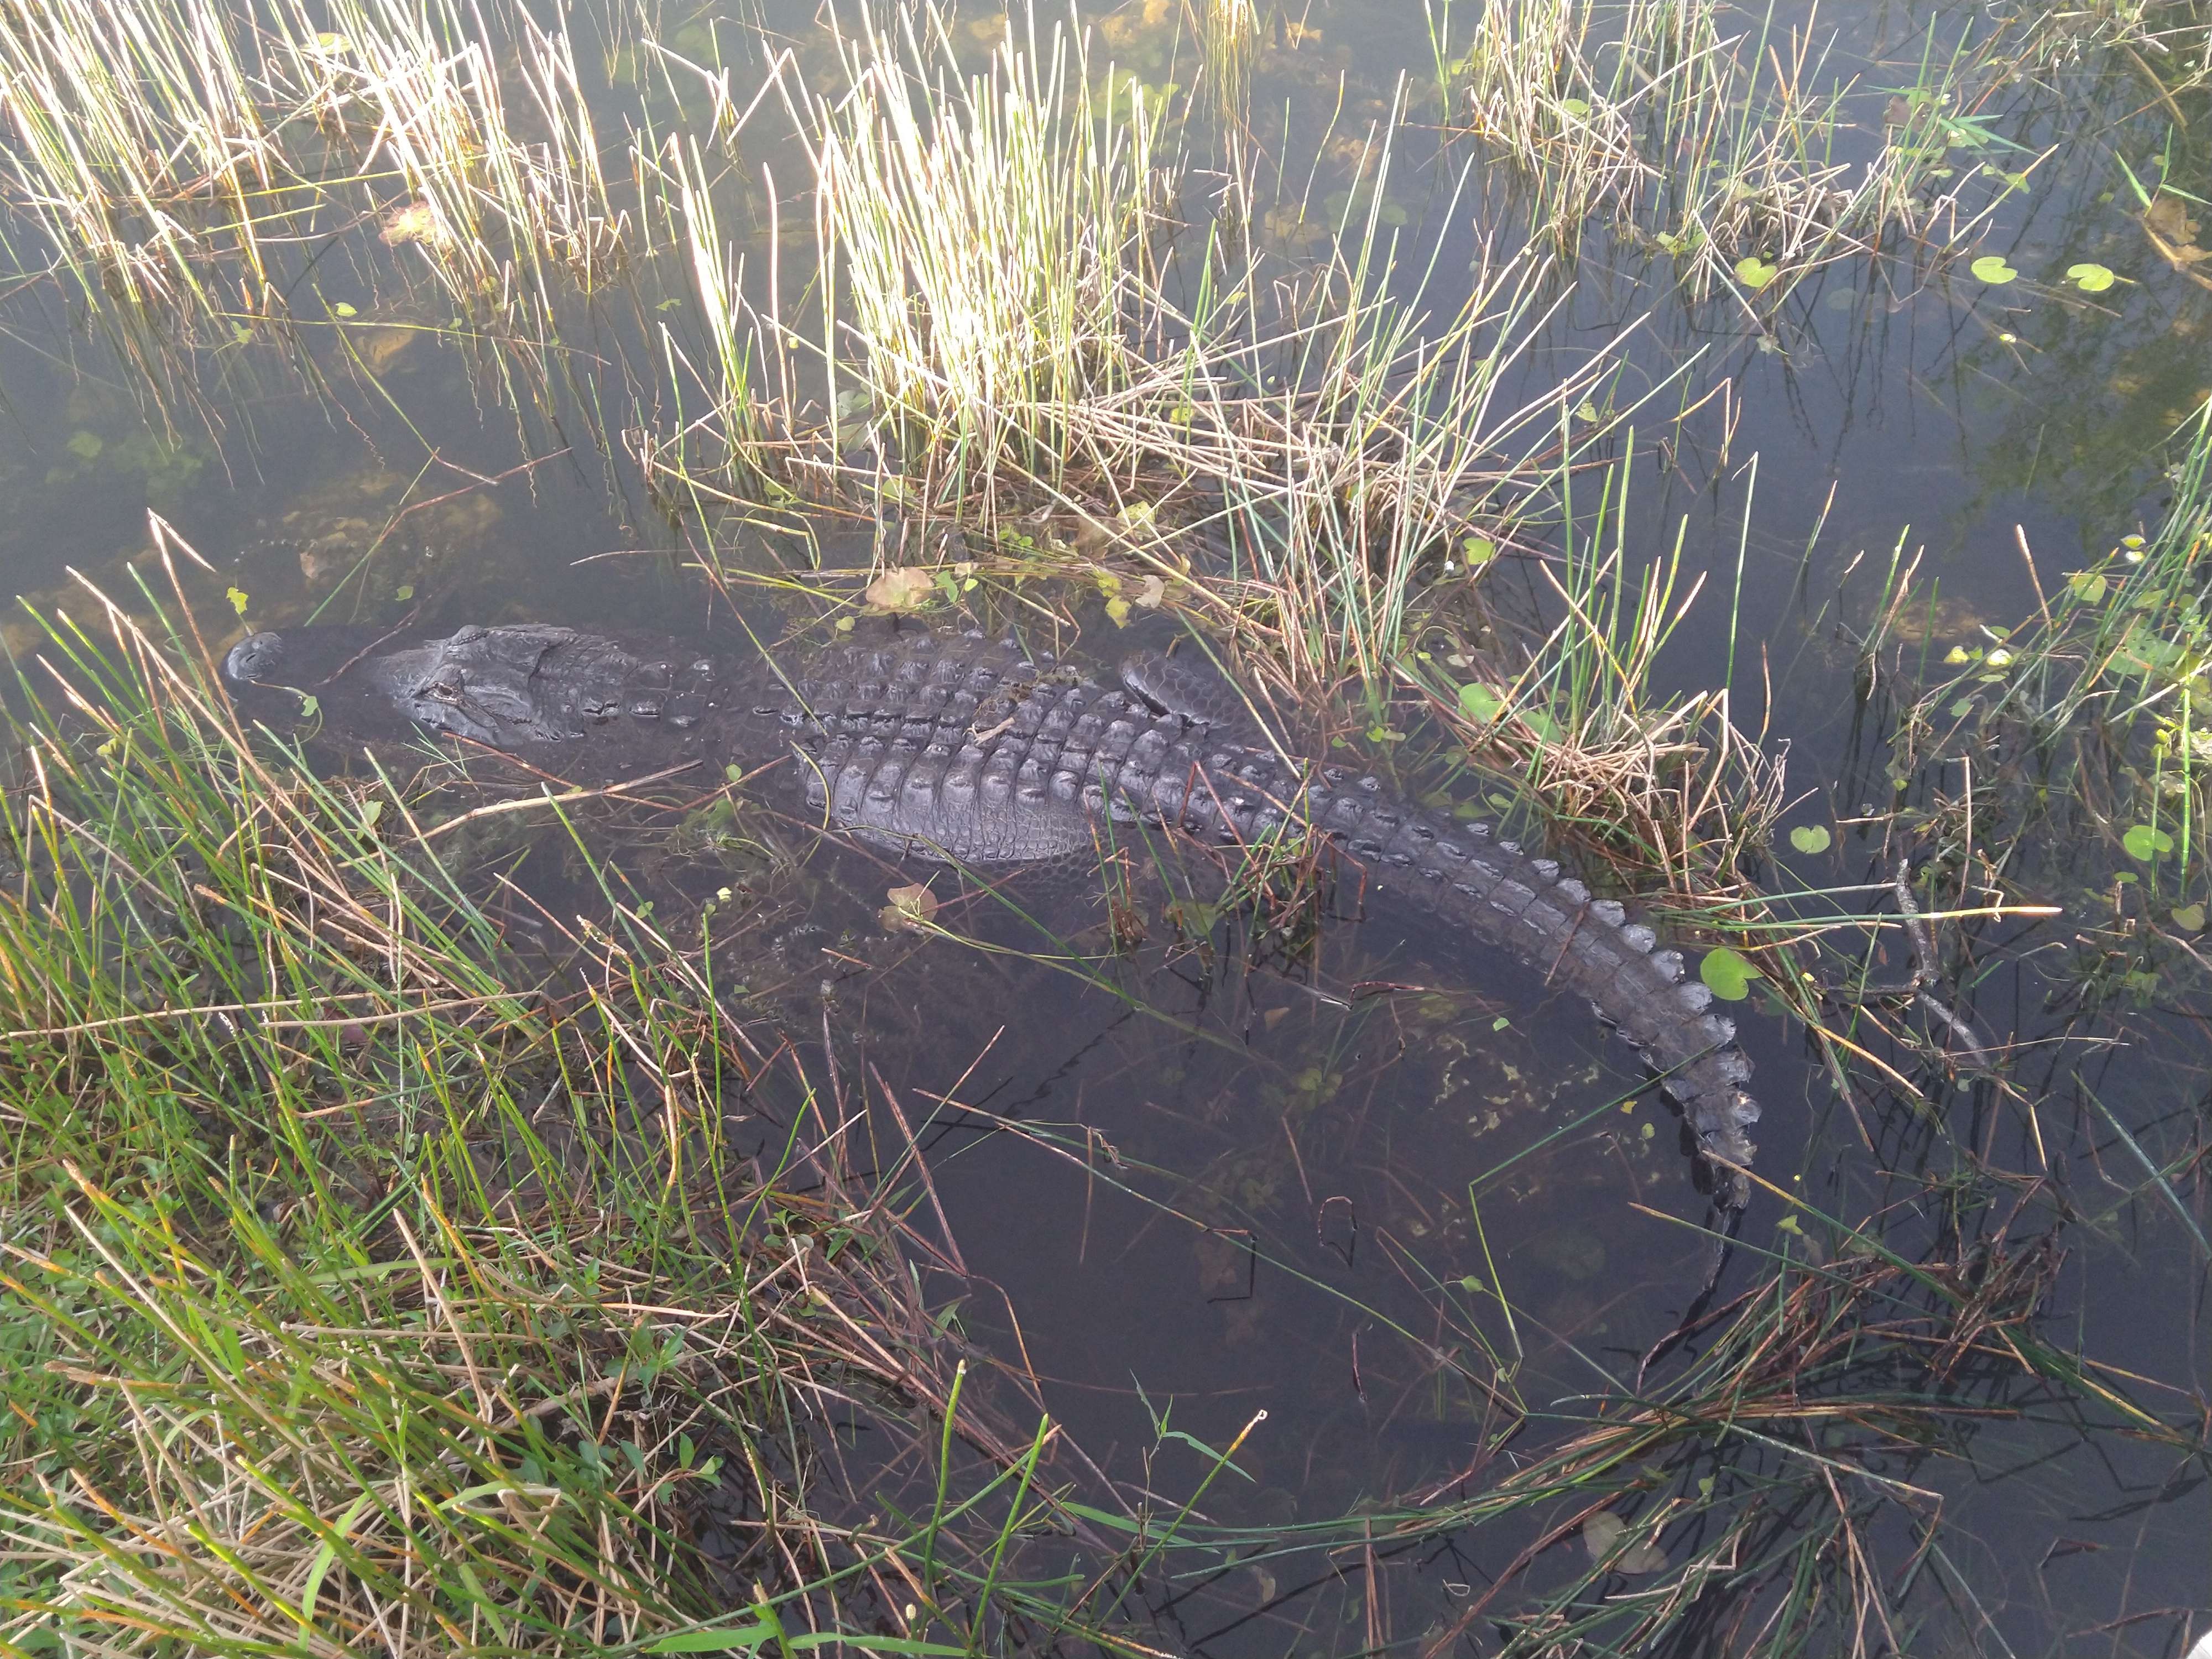 Alligator half submerged